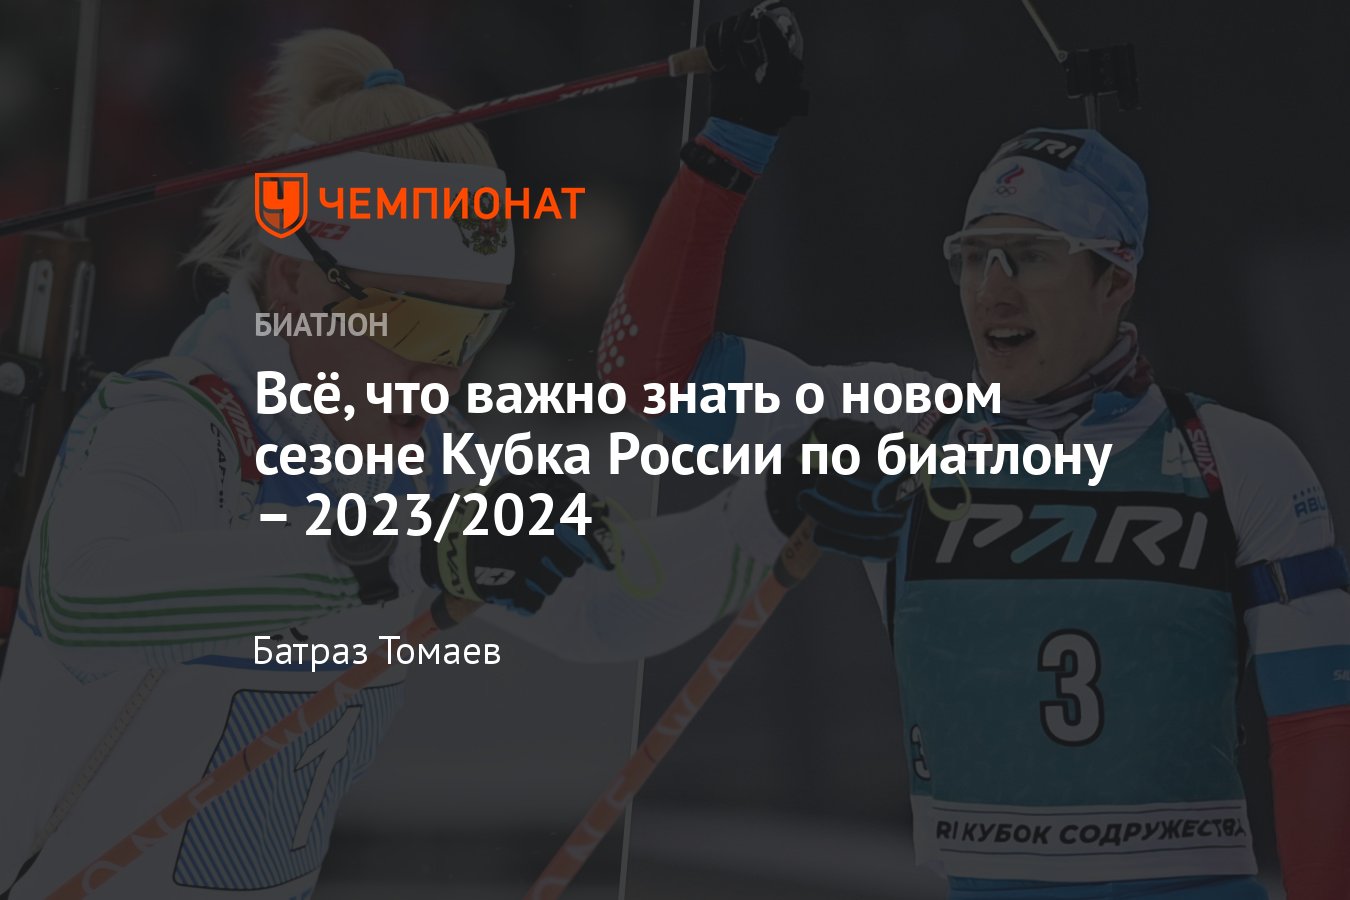 Зачет по биатлону 2023 2024 россия